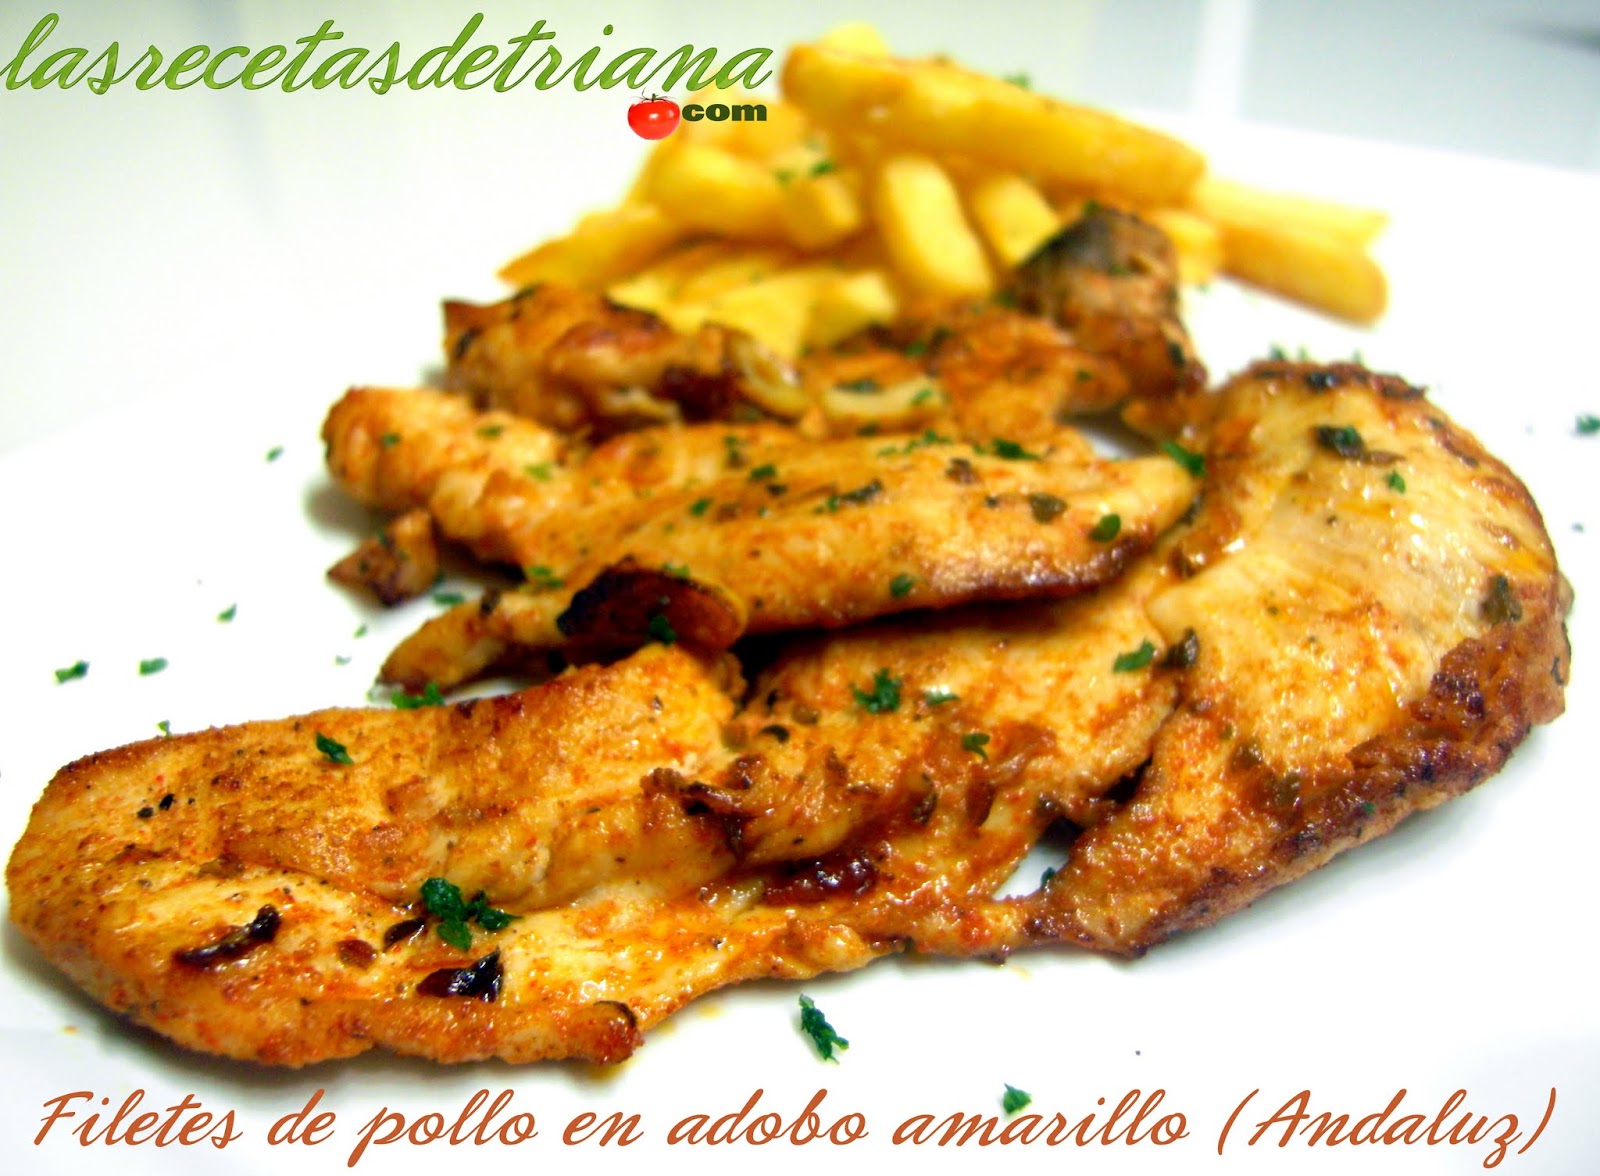 Filetes de pollo en adobo amarillo (Andaluz) - Las recetas de Triana